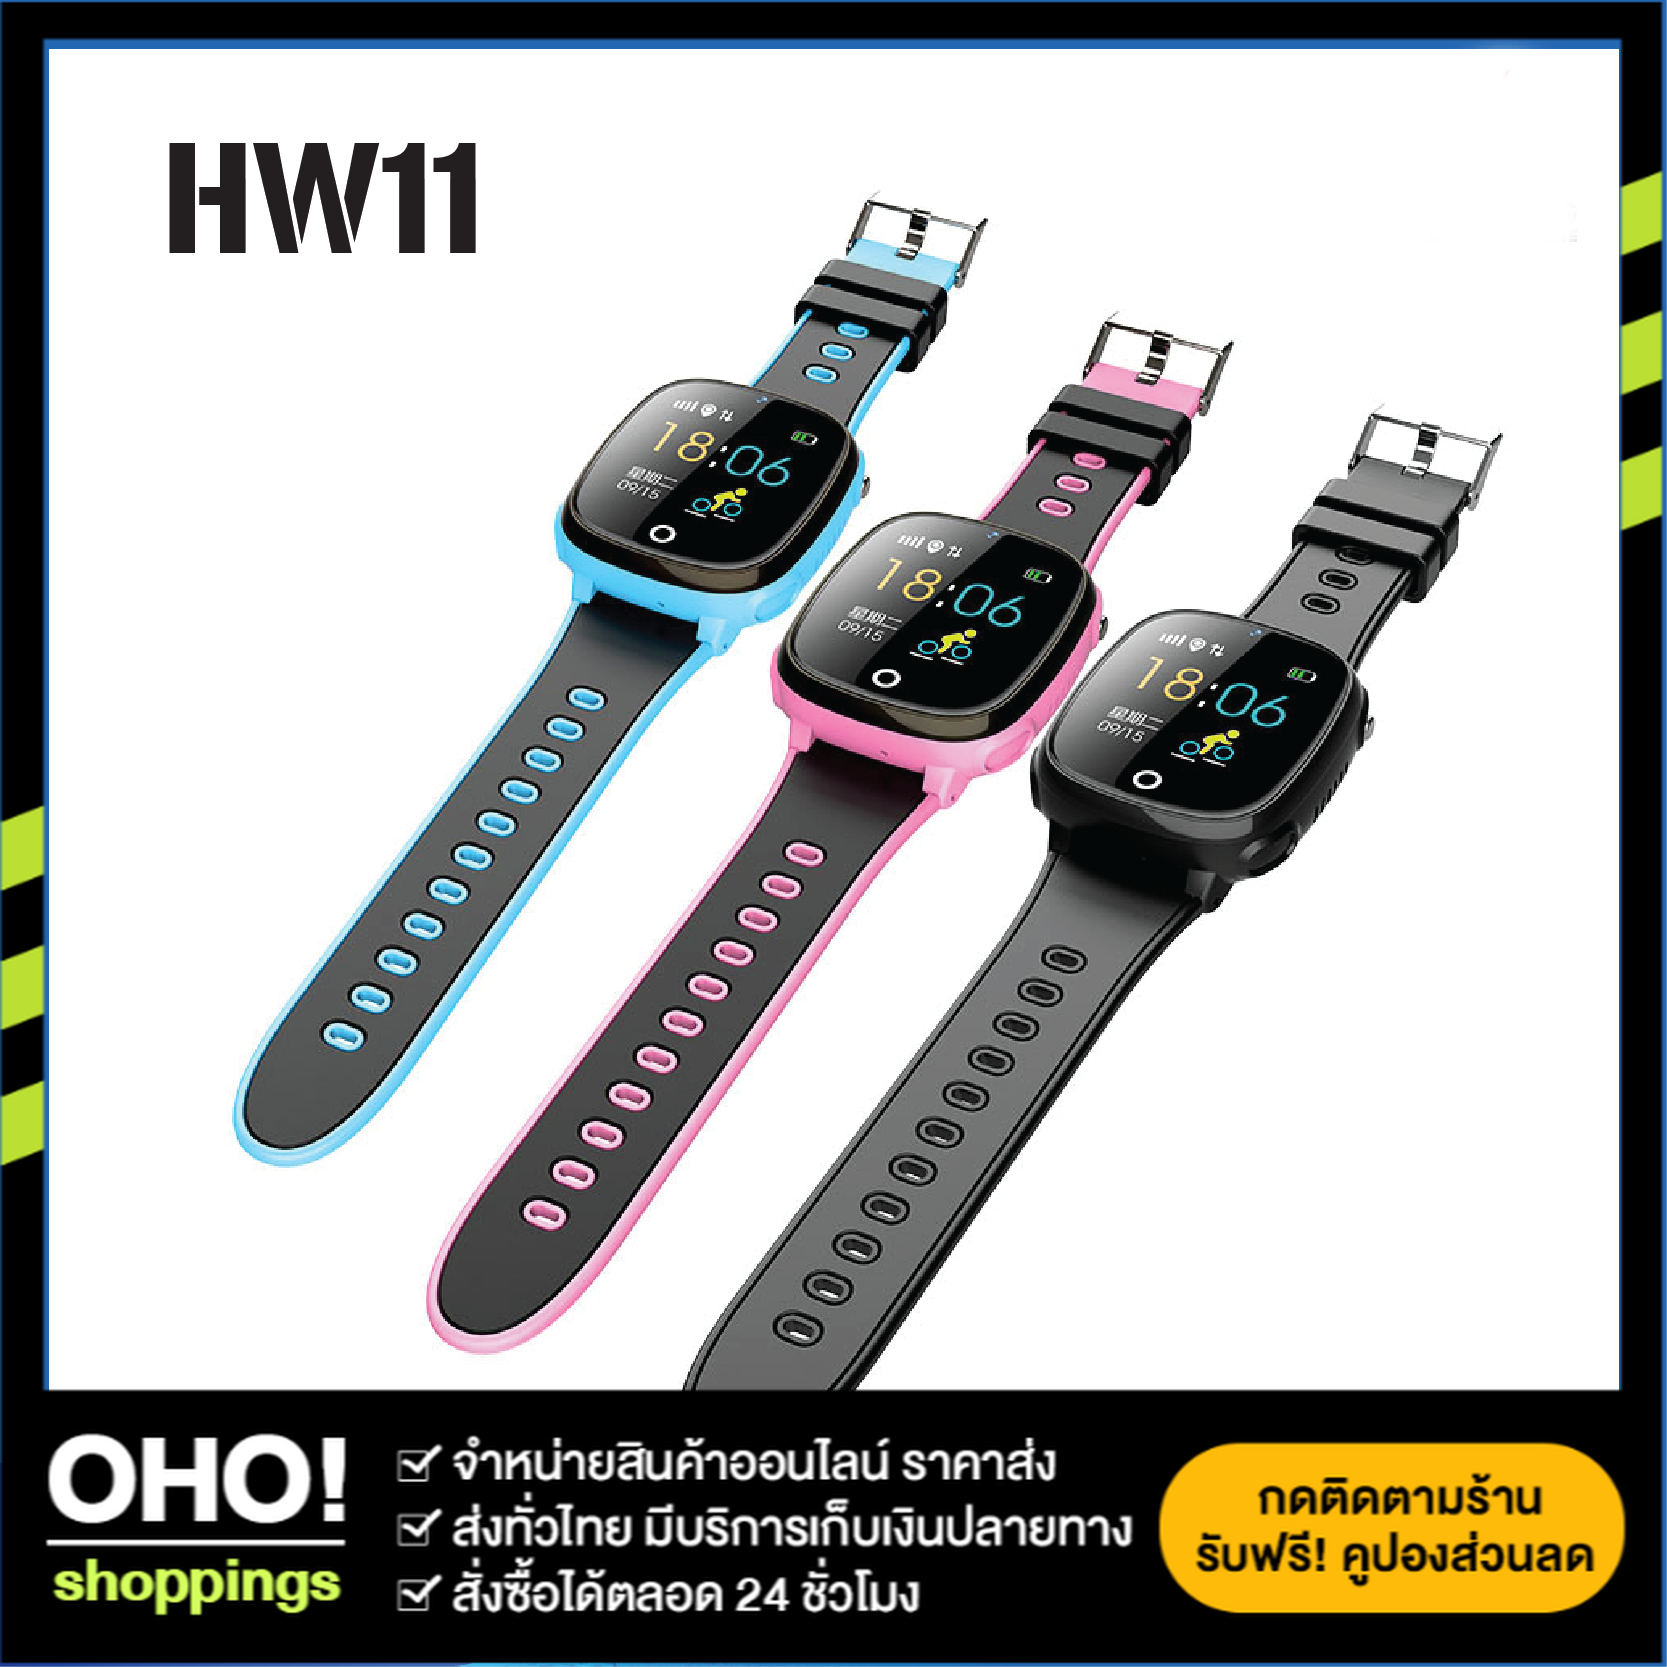 พร้อมส่งจากไทย Smart Watch Kids รุ่น HW11 สมาร์ทวอท์ชเด็ก นาฬิกาเด็ก โทรศัพท์อัจฉริยะ นาฬิกาติดตามเด็ก ตำแหน่งเด็ก บลูทูธ สี สีดำ สี สีดำขนาดหน้าปัด ฟรีไซส์การเชื่อมต่อนาฬิกา GPS + Cellular